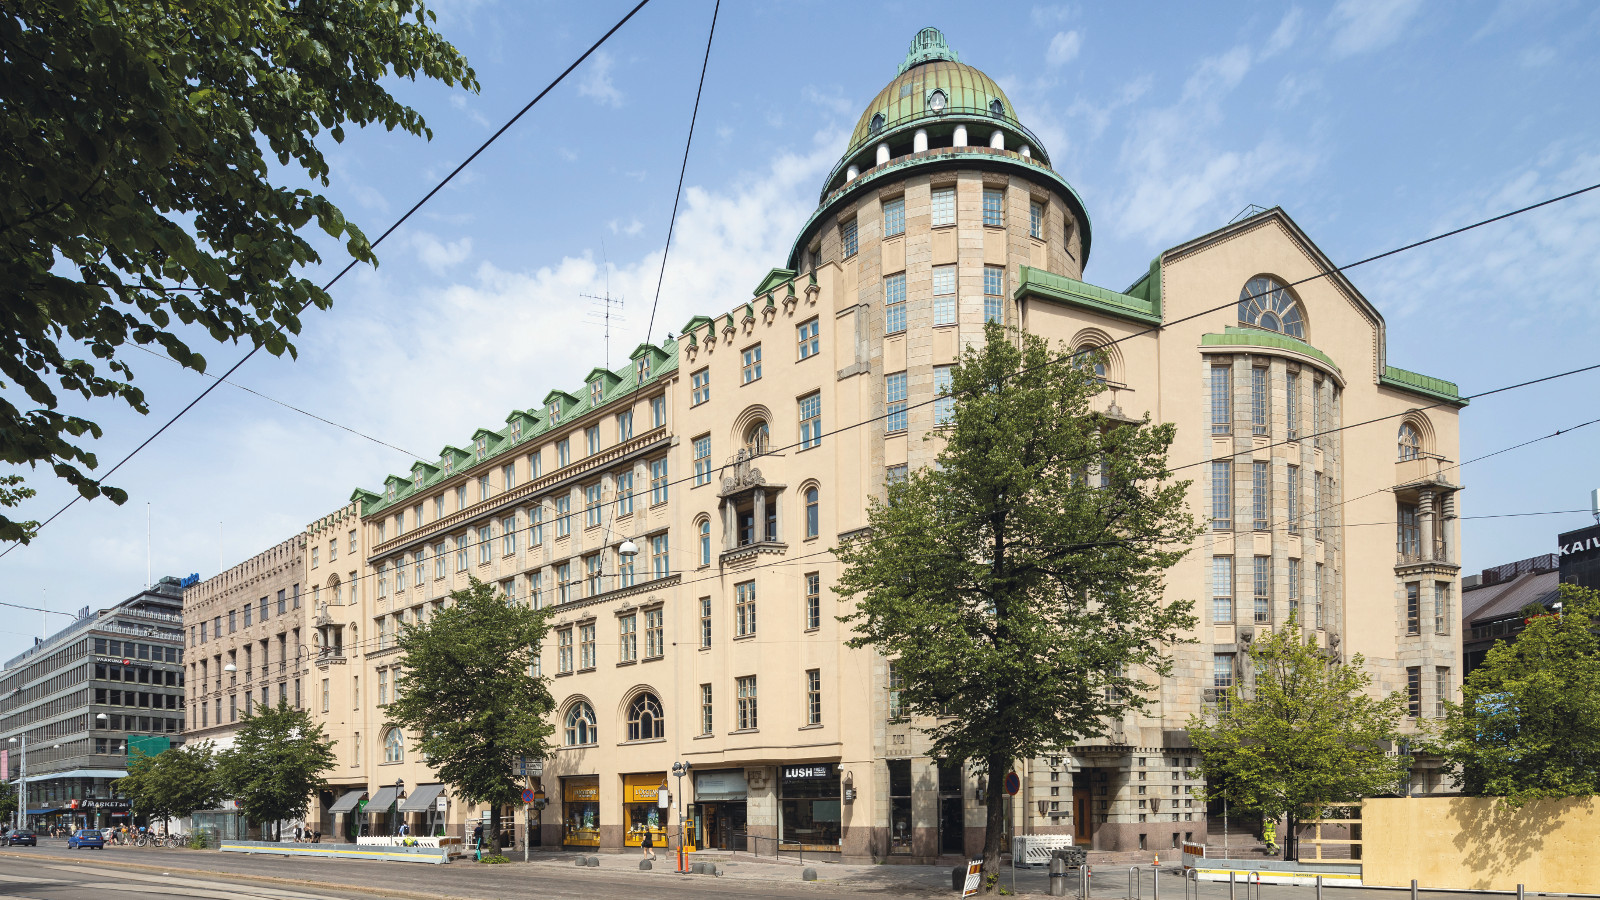 Kuvassa on Uusi ylioppilastalo Helsingissä. Talo on kellertävä 5-kerroksinen ja siinä on torni kulmassa. 